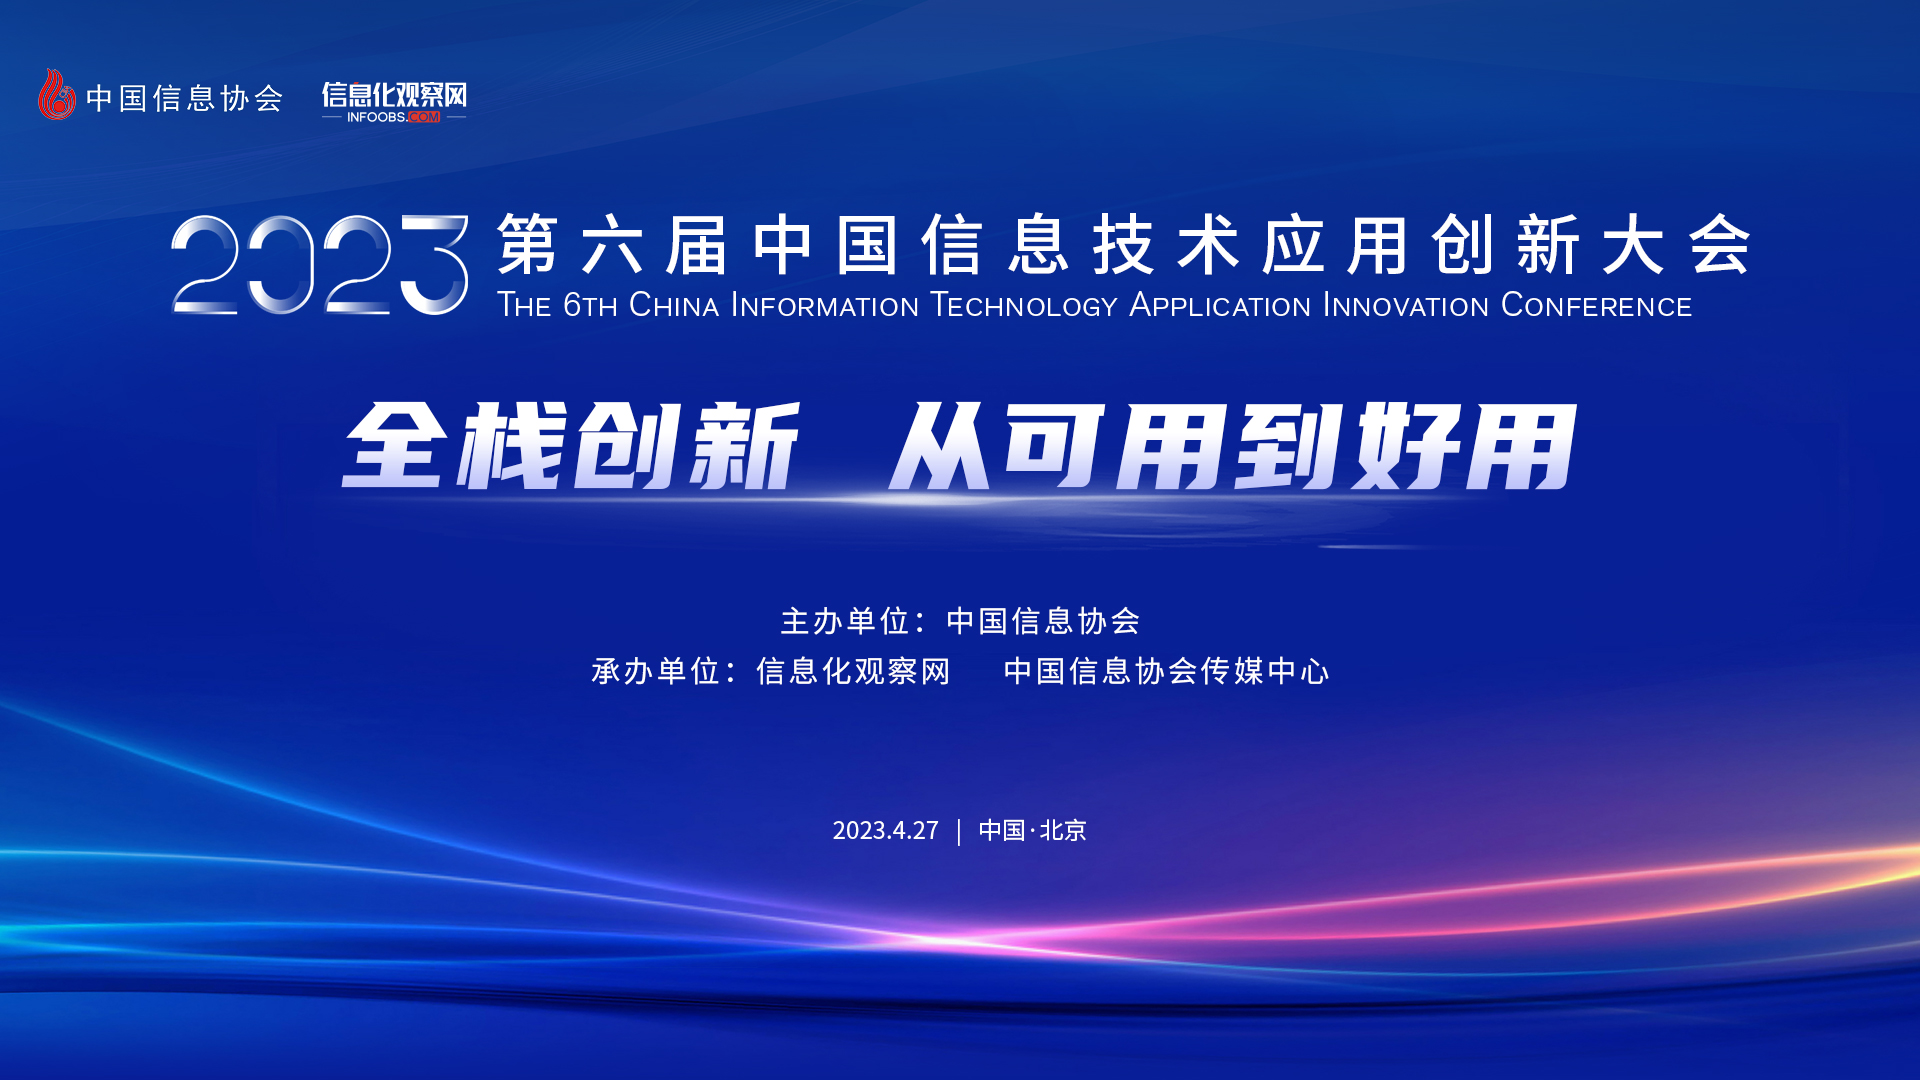 持续加速产业数智变革，紫光恒越携创新产品方案亮相2023中国信息技术应用创新大会